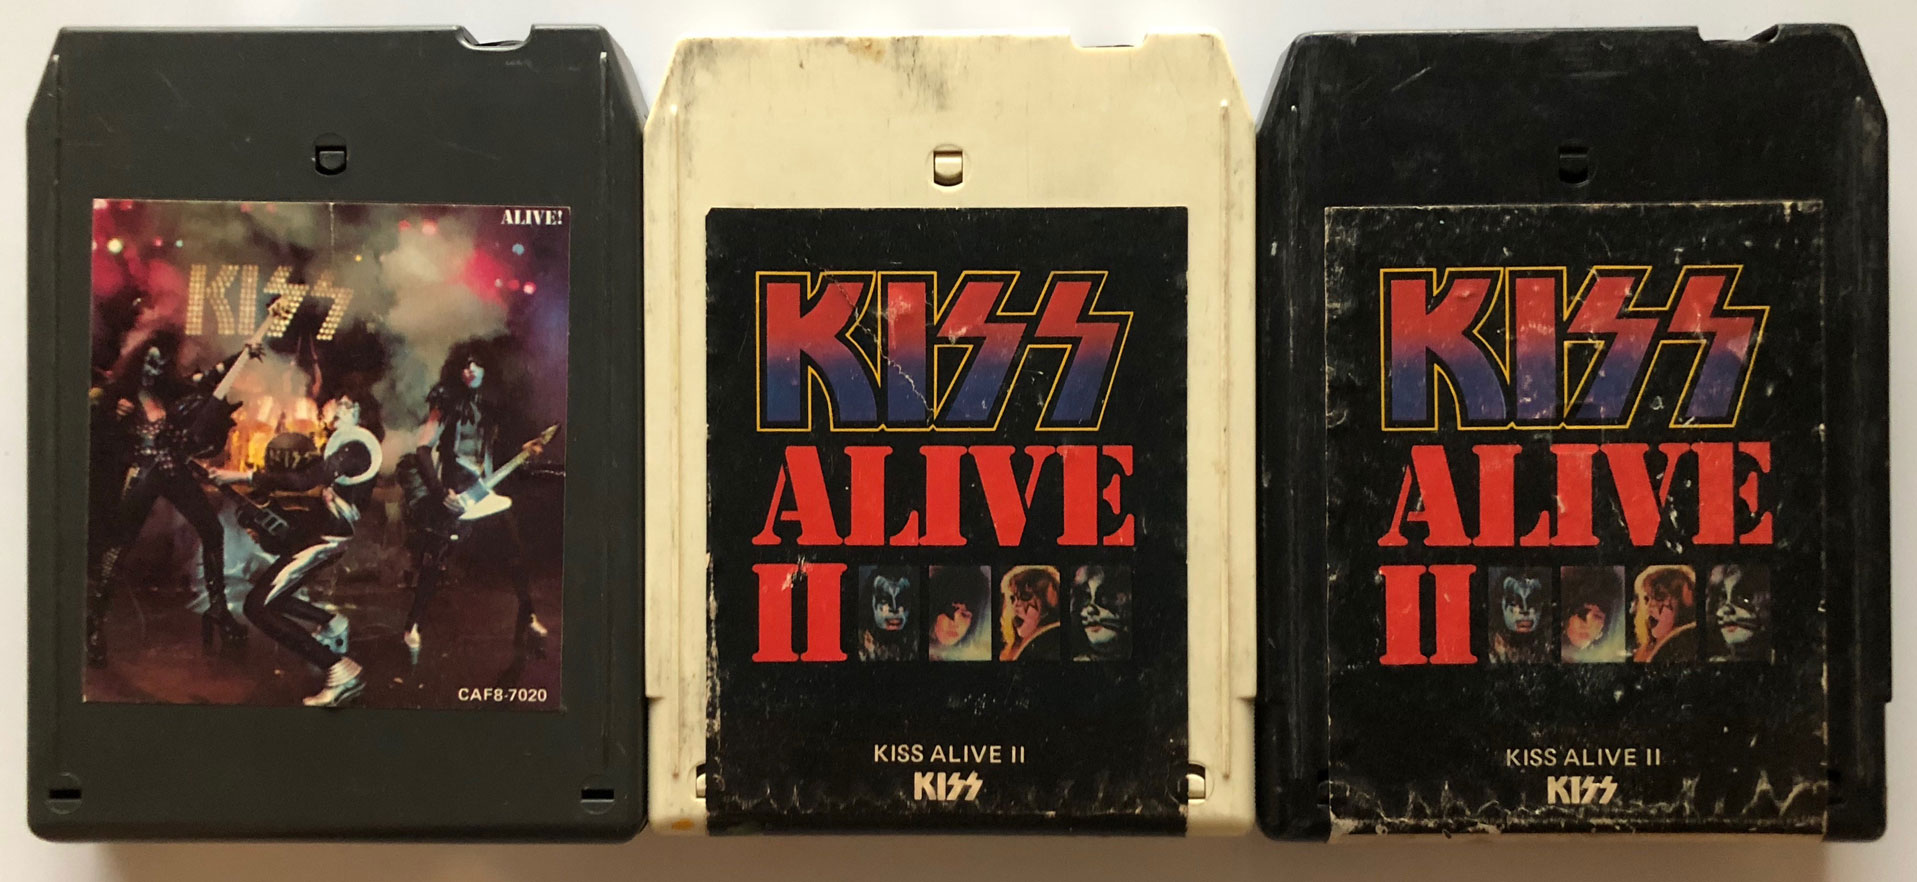 Kiss-Alive-Alive-II-8-Track-Covers-1975-1977.jpg